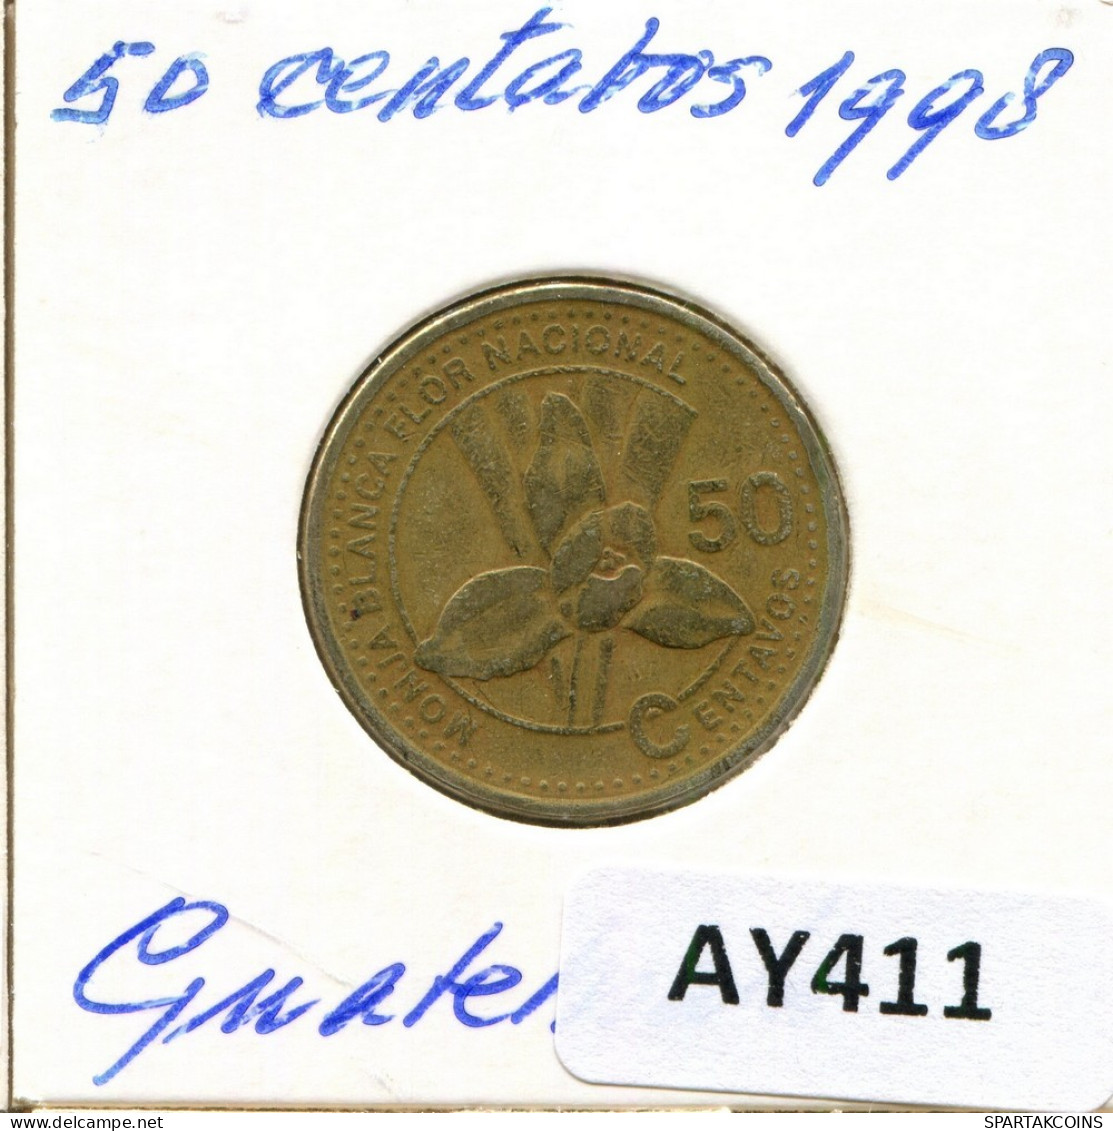 50 CENTAVOS 1998 GUATEMALA Coin #AY411.U - Guatemala